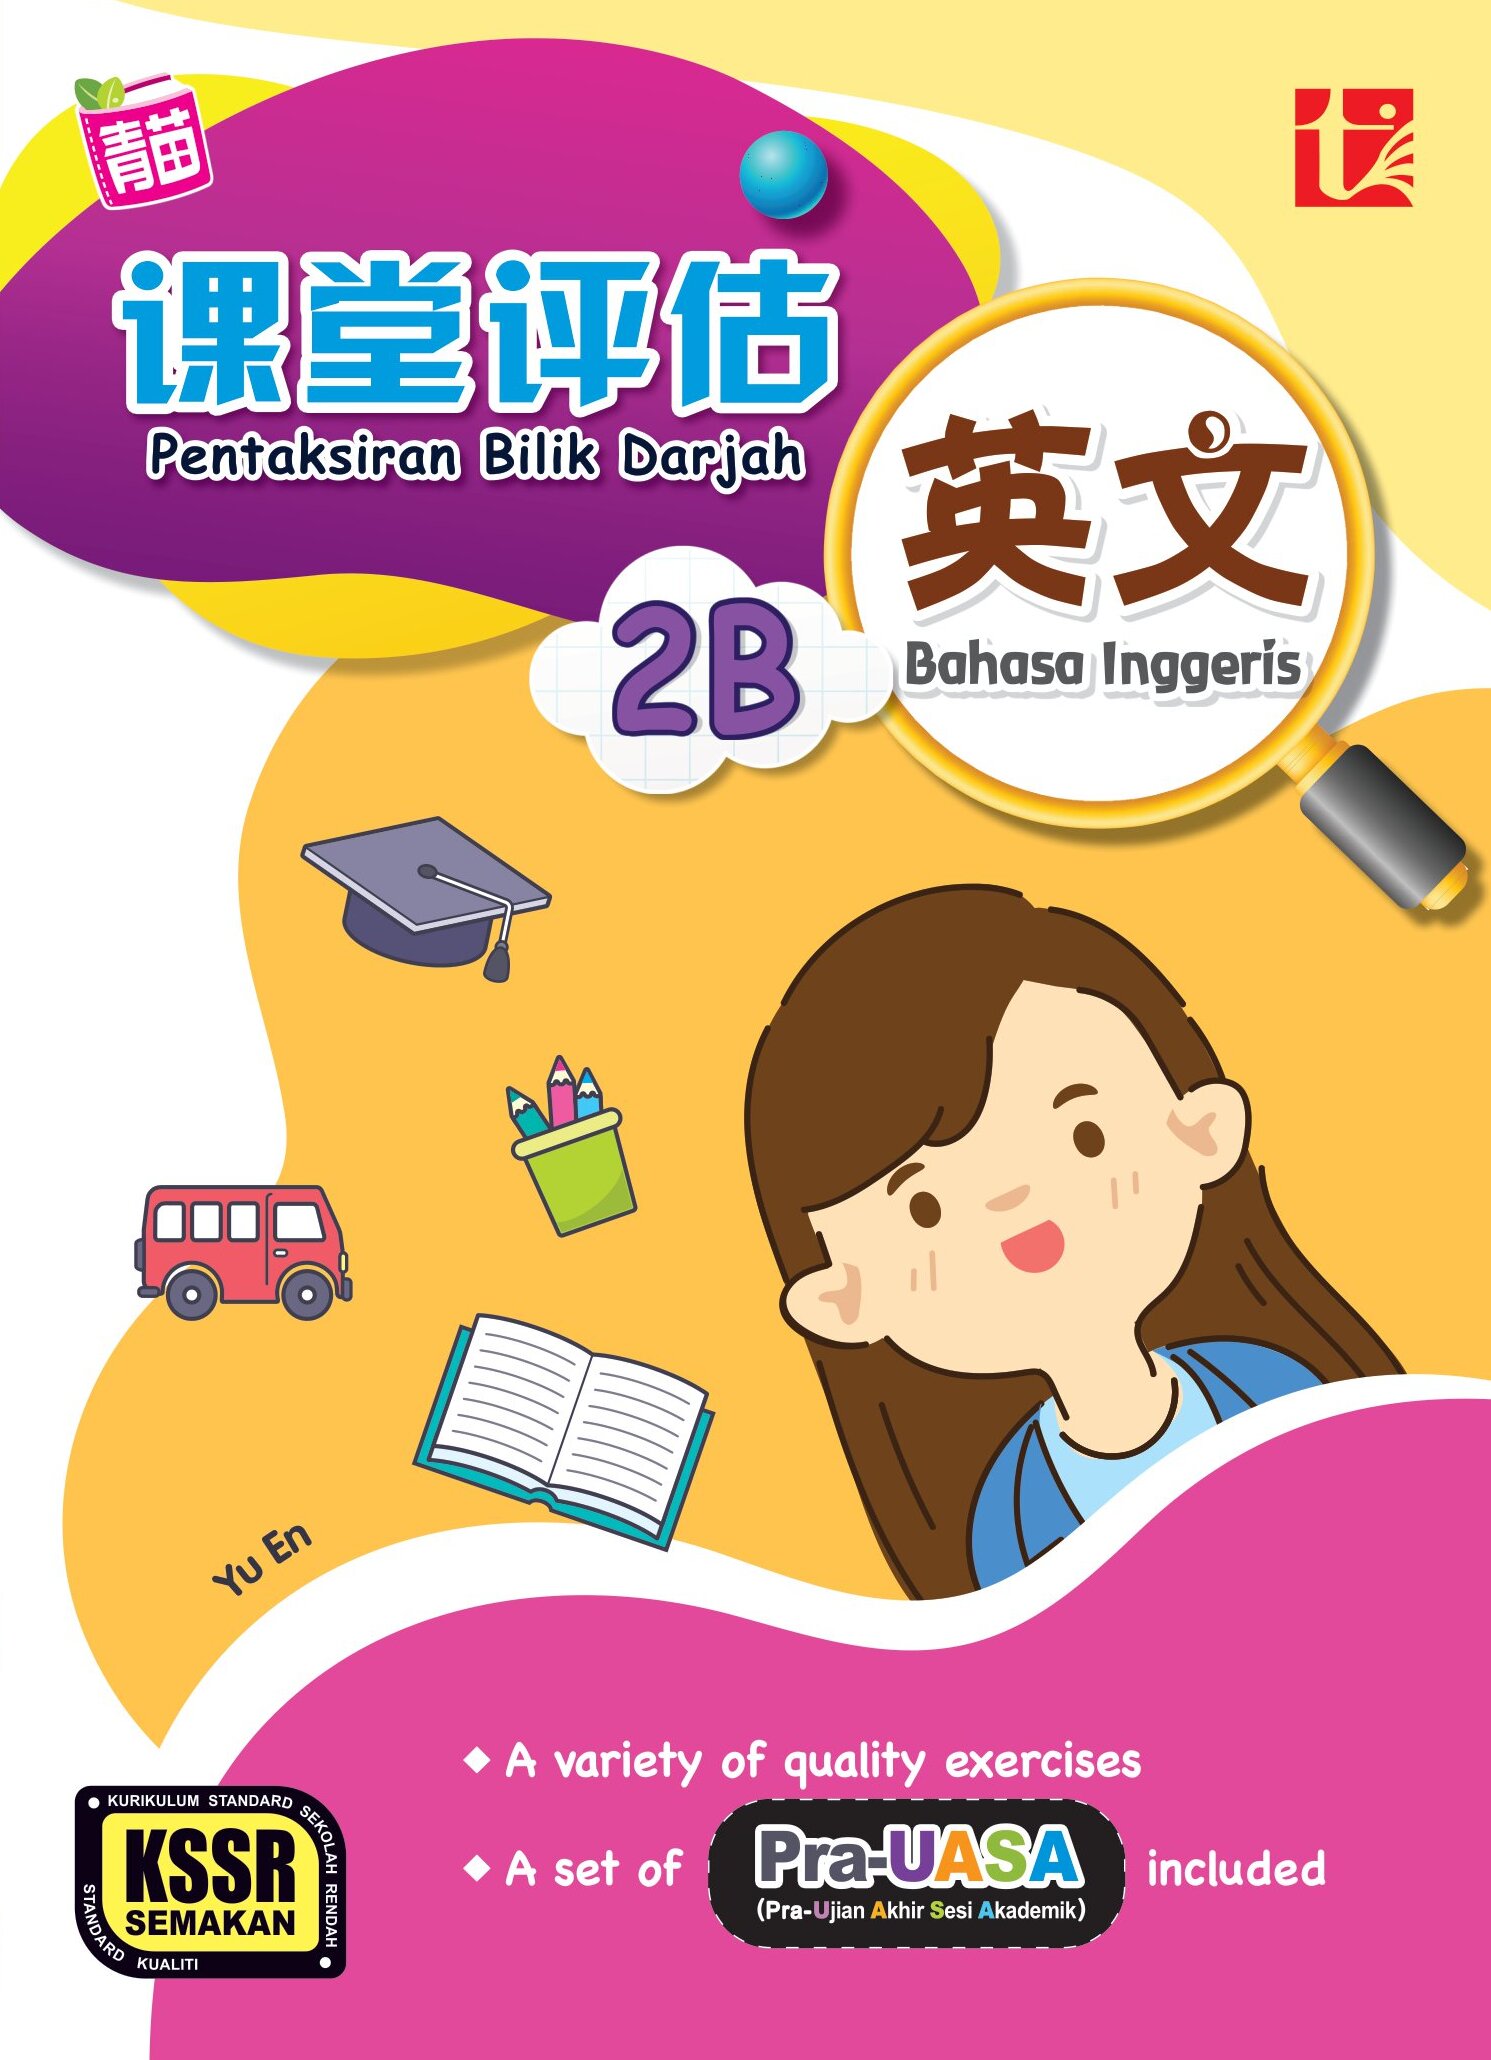 Pentaksiran Bilik Darjah 2023 课堂评估 2B 年级 英文 Bahasa 